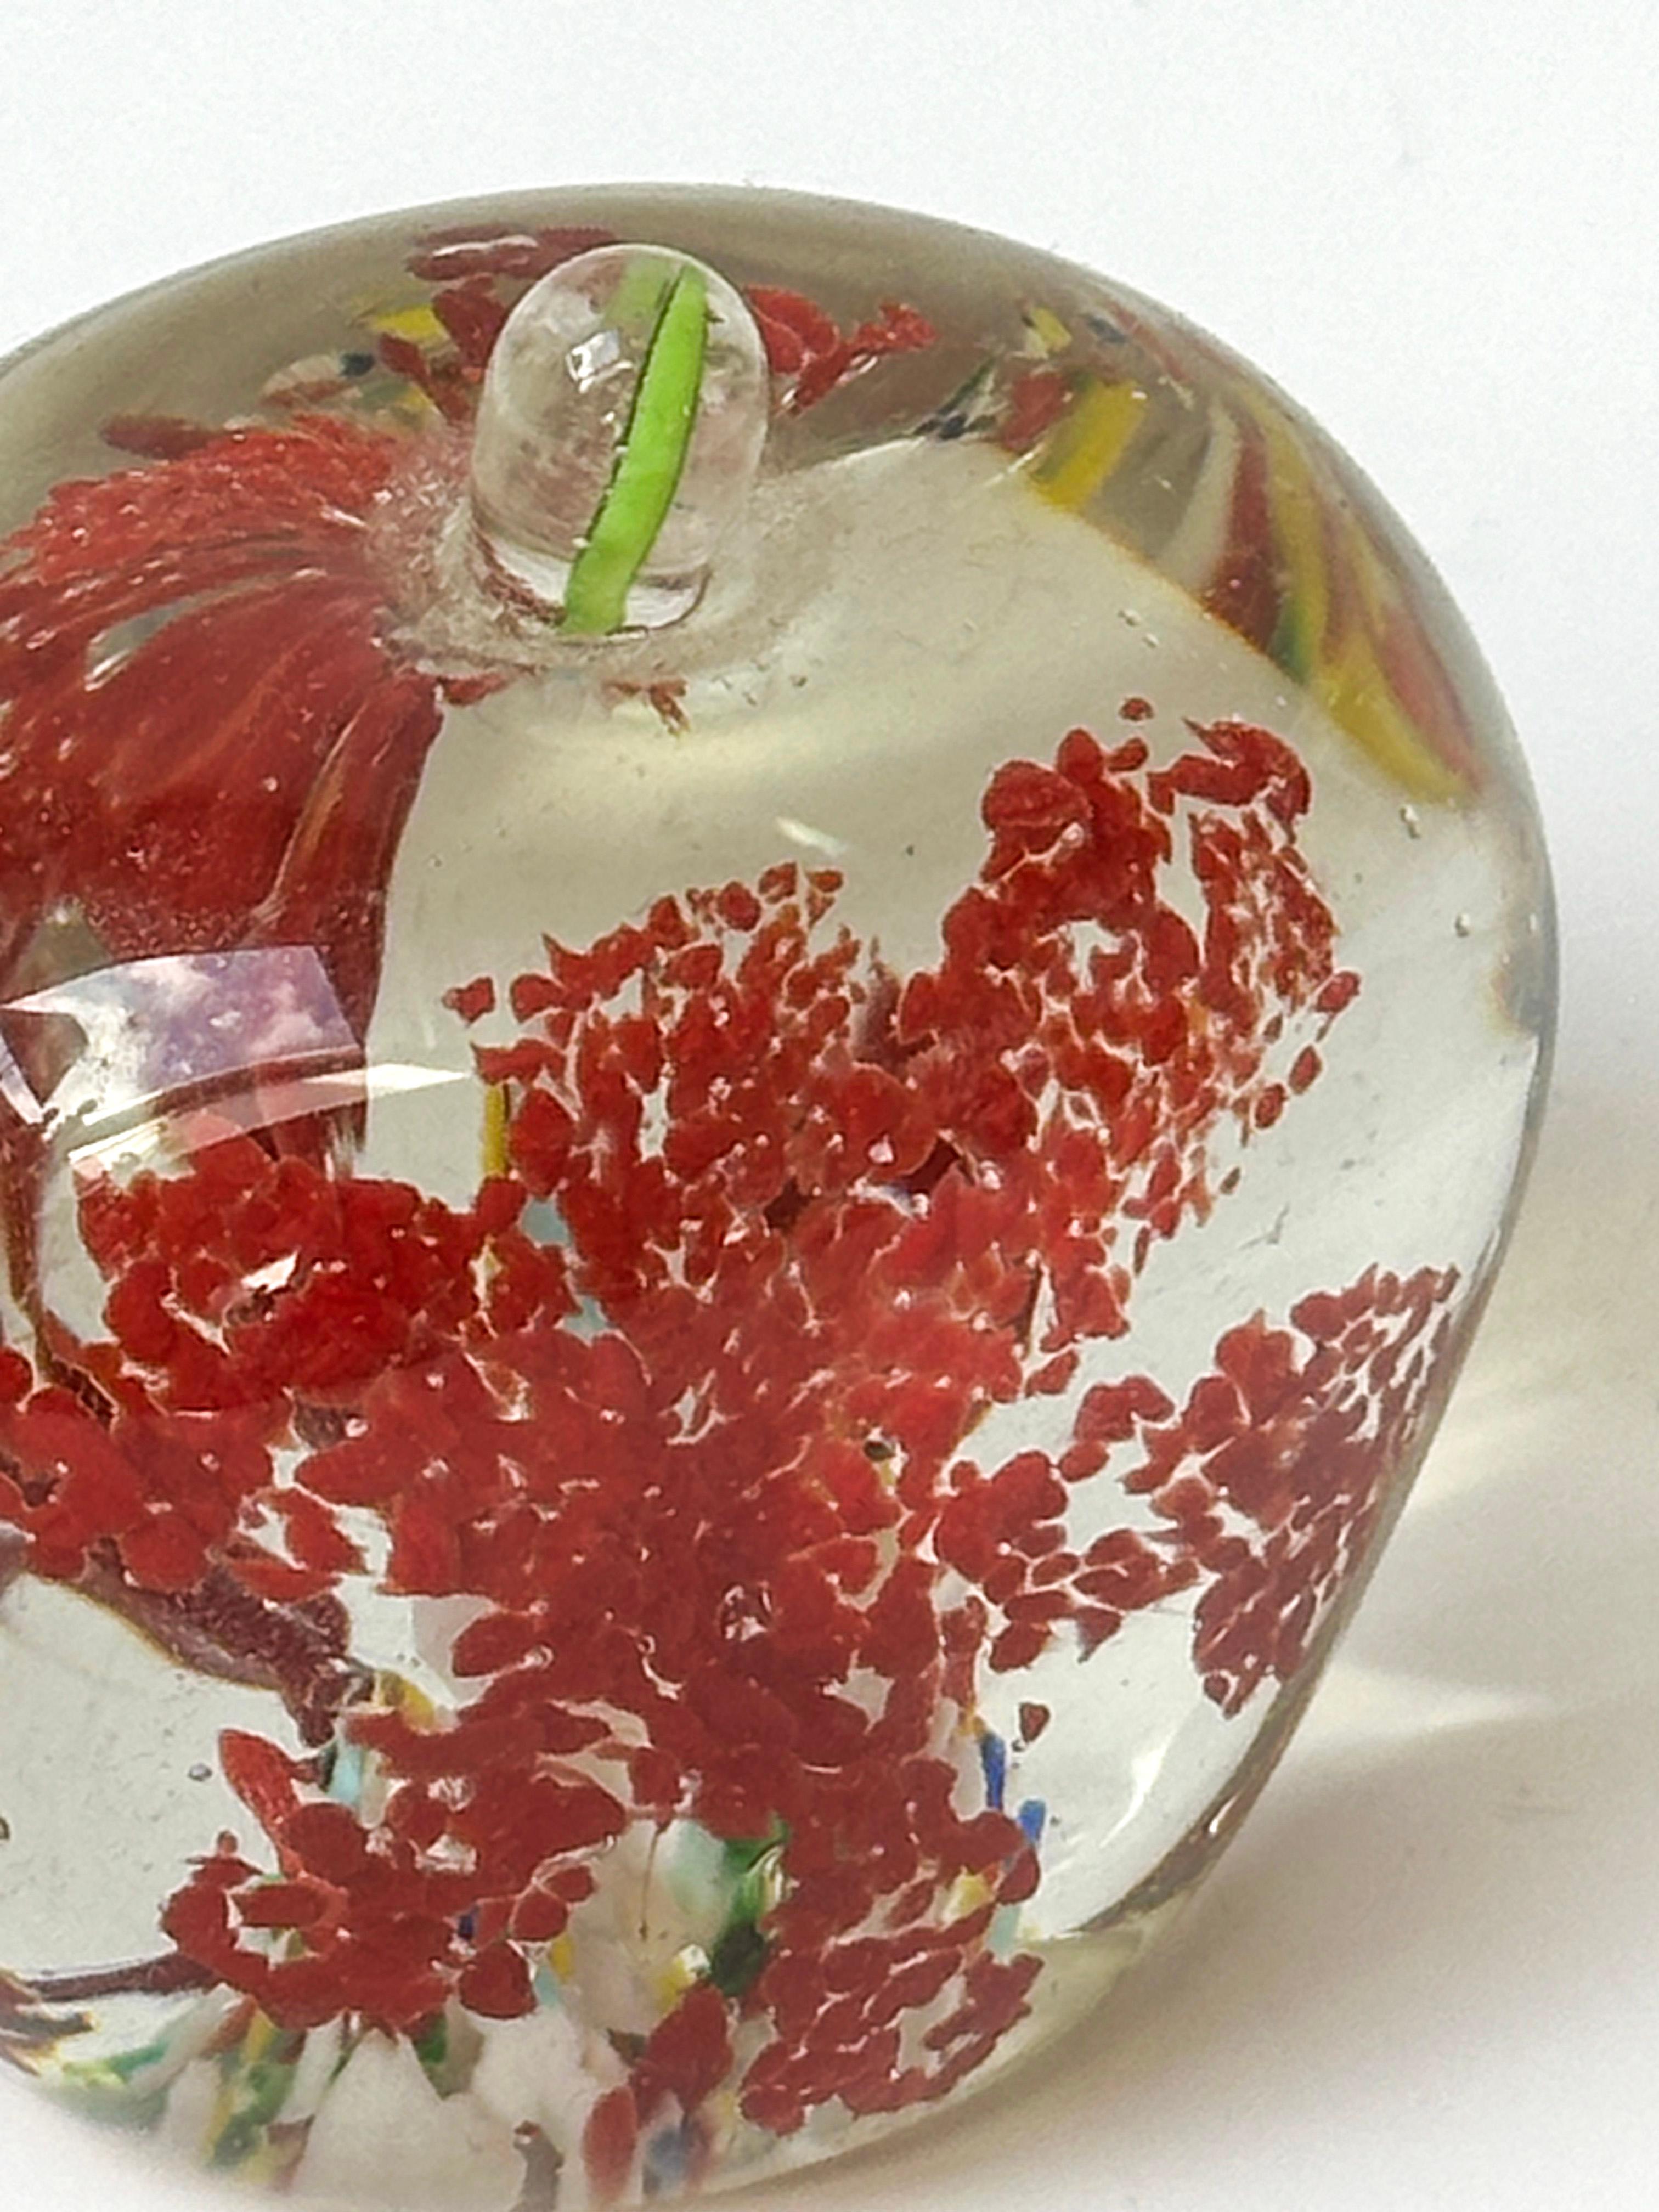 Dieser Briefbeschwerer aus Murano-Glas in Form eines Apfels ist ein Beispiel für handwerkliches Geschick und Exzellenz. Er besticht durch seine filigranen inneren Details und seine technische Kreativität. Sie ist ein Beispiel für die Kunstfertigkeit